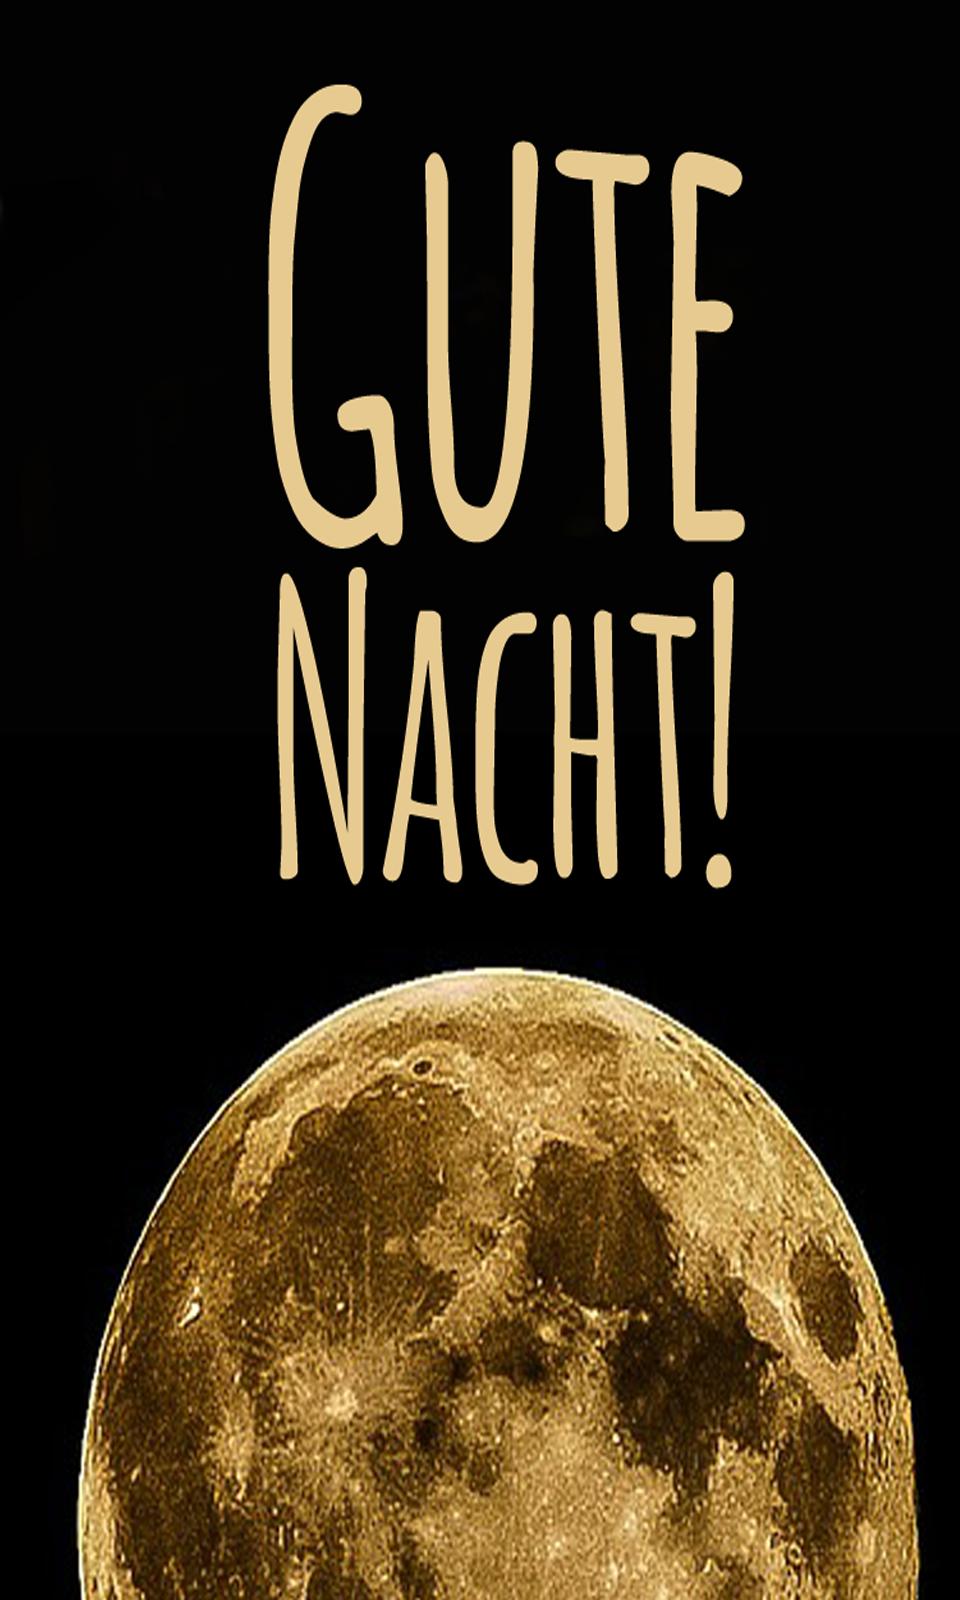 Sweet german goodnight dreams in in German: